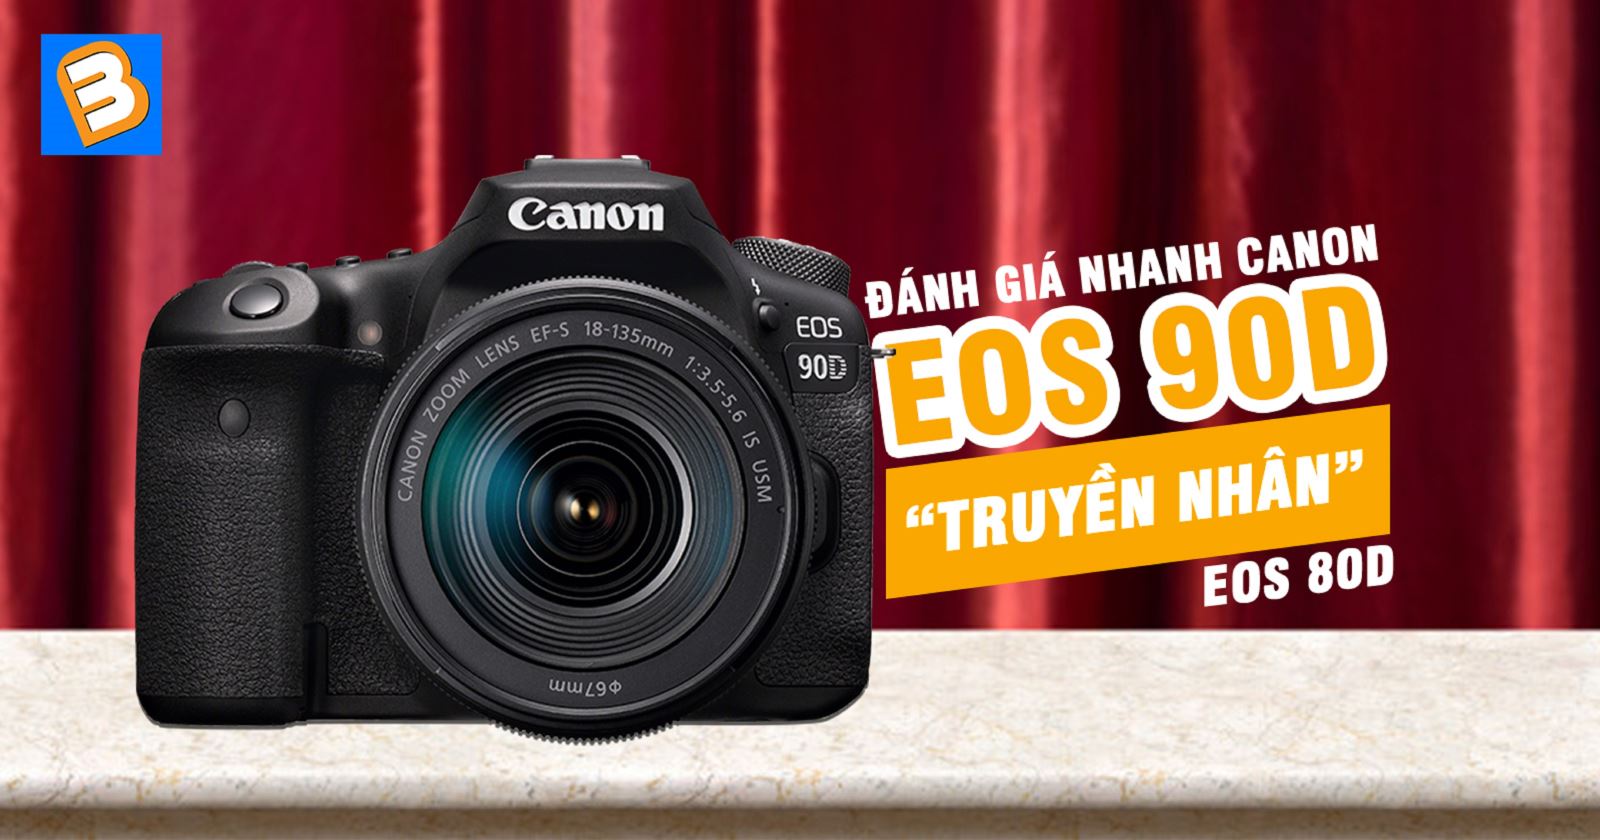 Đánh giá nhanh Canon EOS 90D - 'truyền nhân' EOS 80D